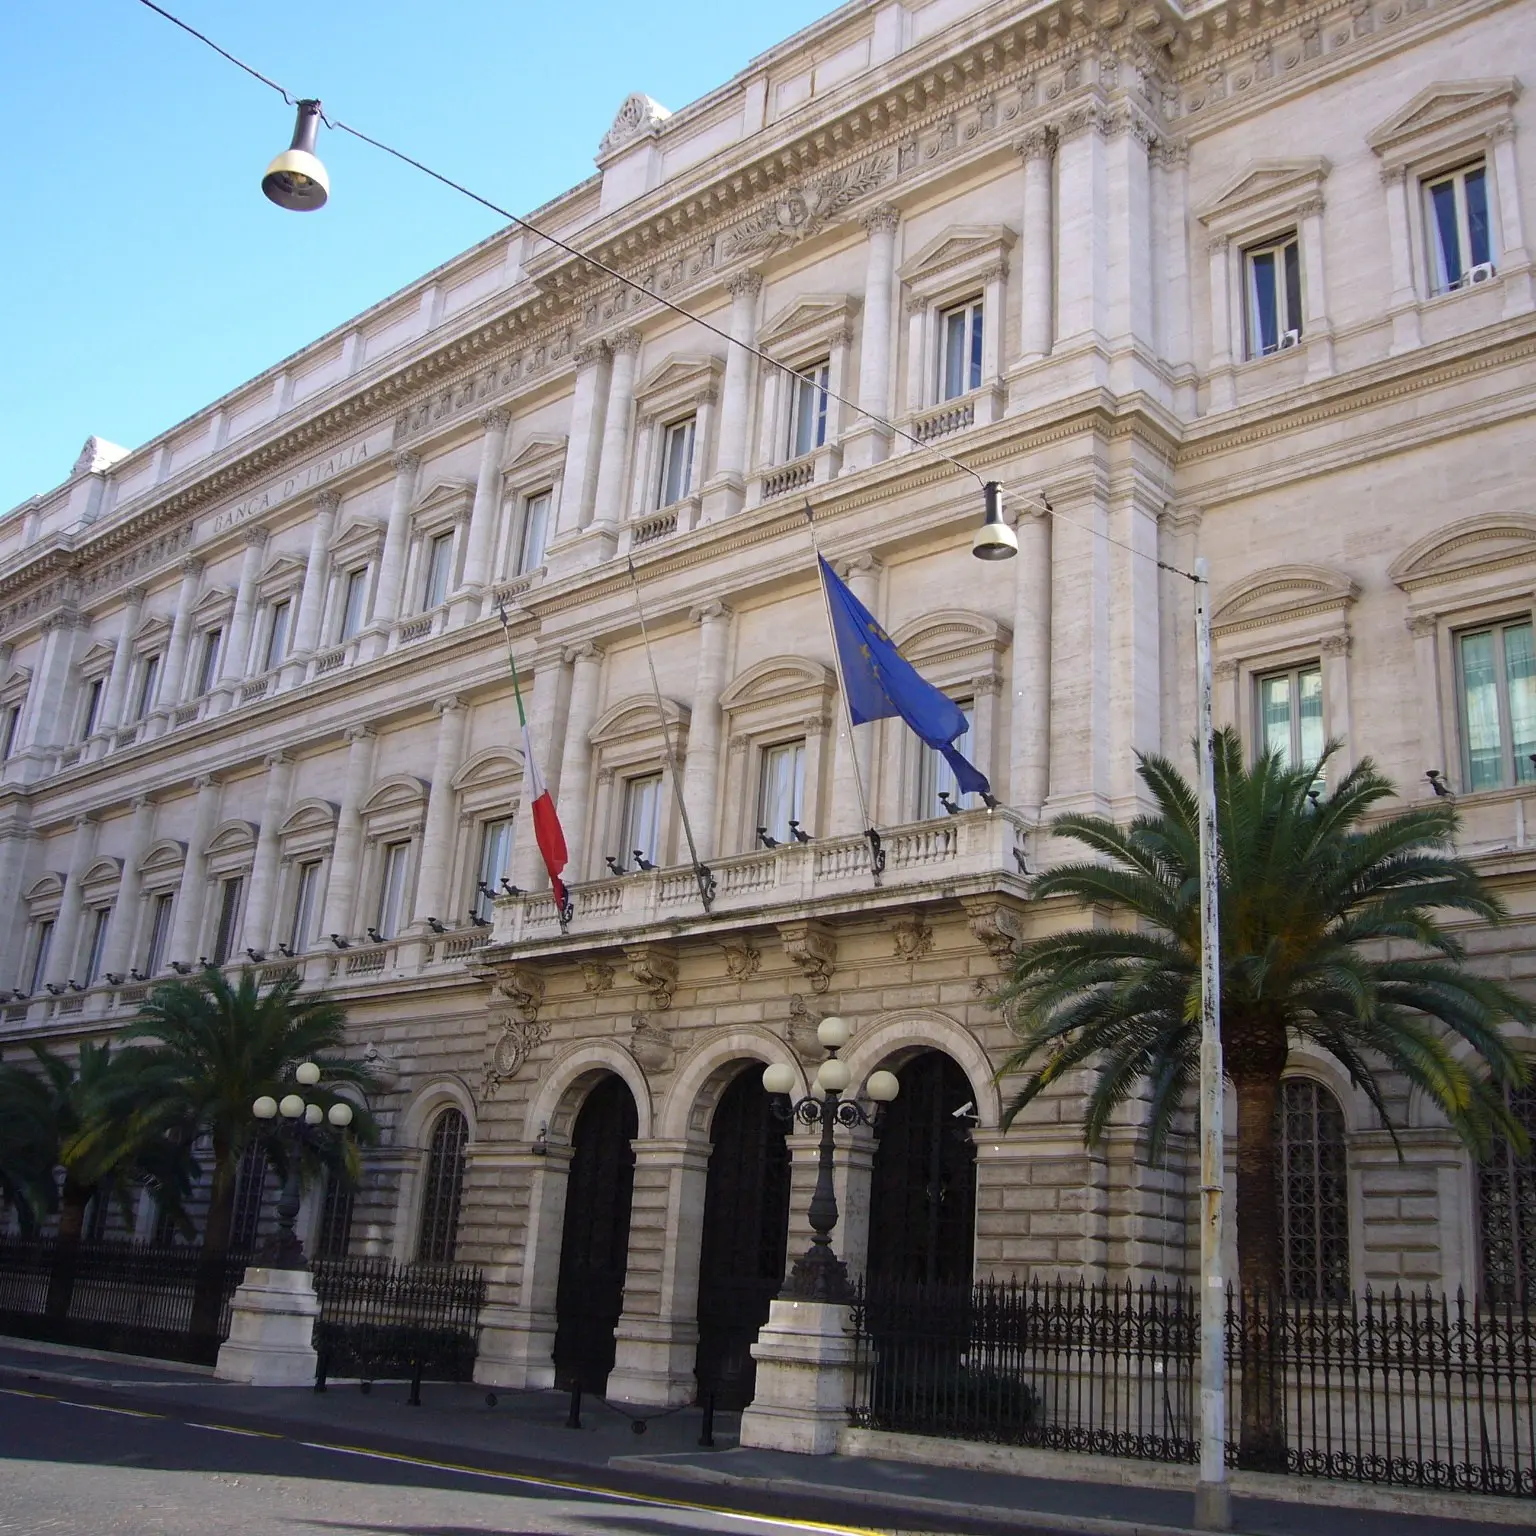 Al verde e senza stipendio, battono cassa a Banca d'Italia